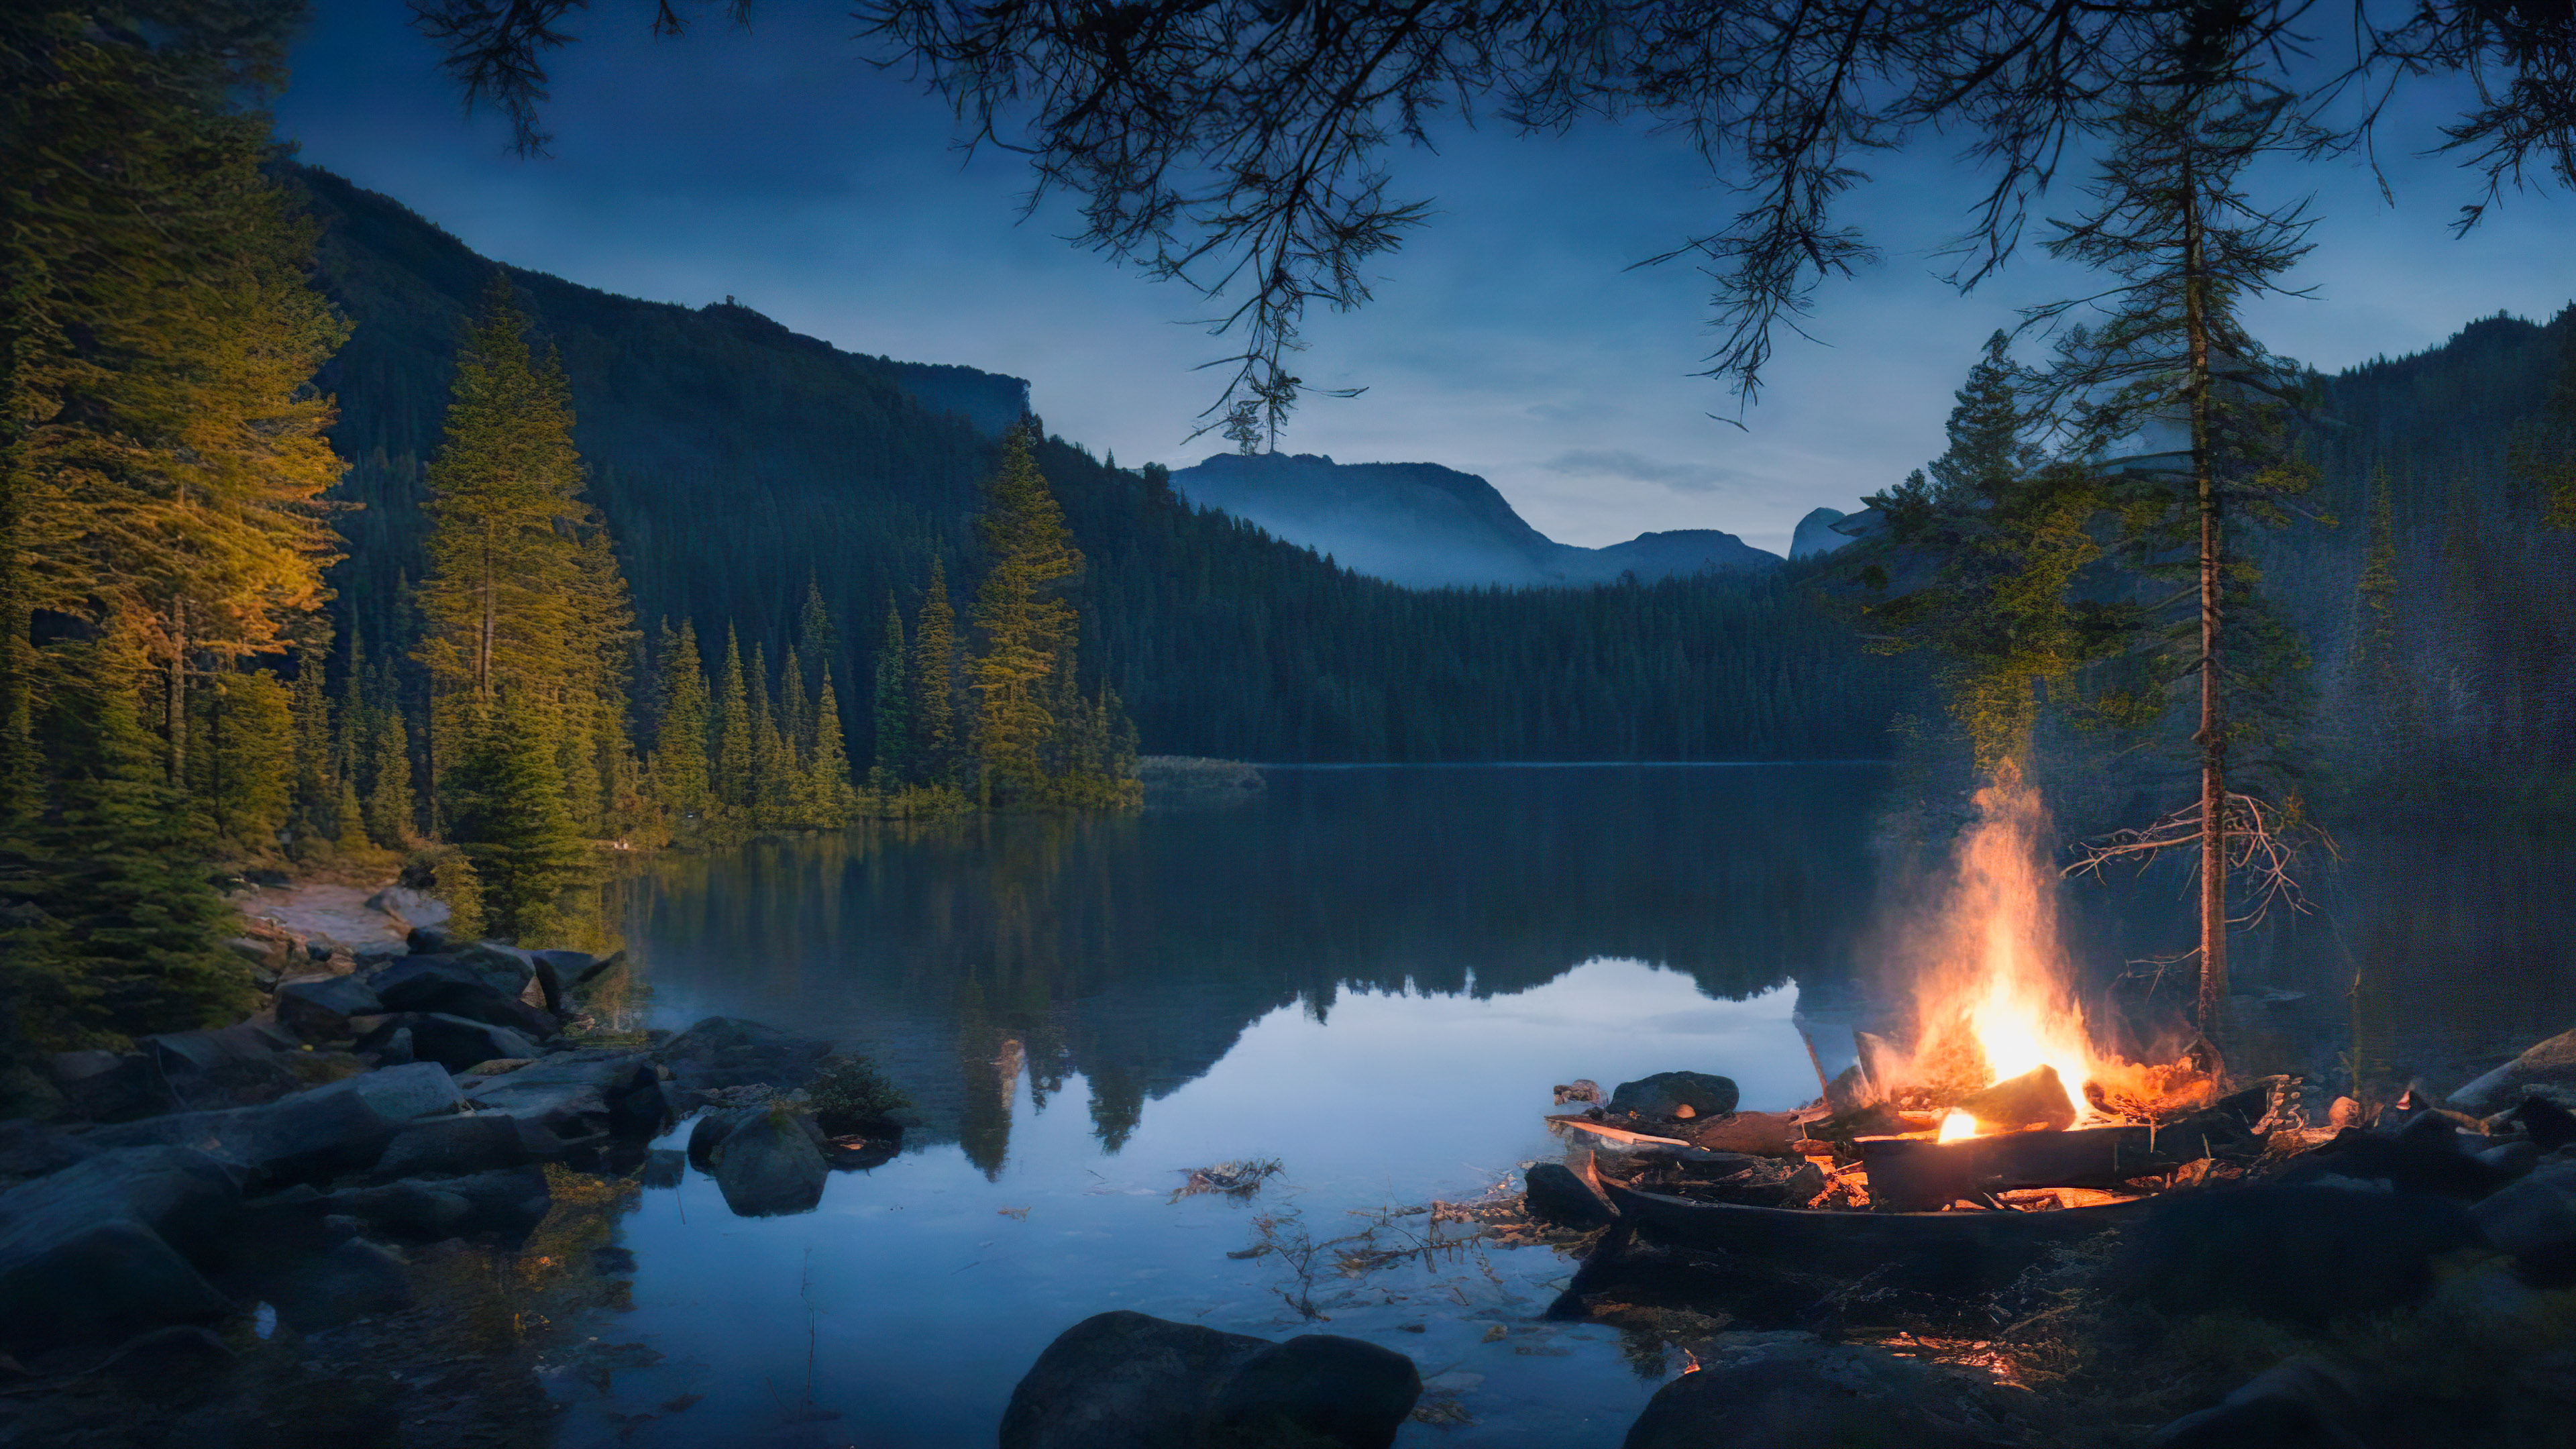 Transformez votre PC avec notre fond d'écran nature pour bureau en HD, présentant un campement paisible au bord d'un lac et un feu de camp vacillant, entouré d'une nature sauvage sombre et boisée, et ressentez la tranquillité s'infiltrer dans votre espace de travail.